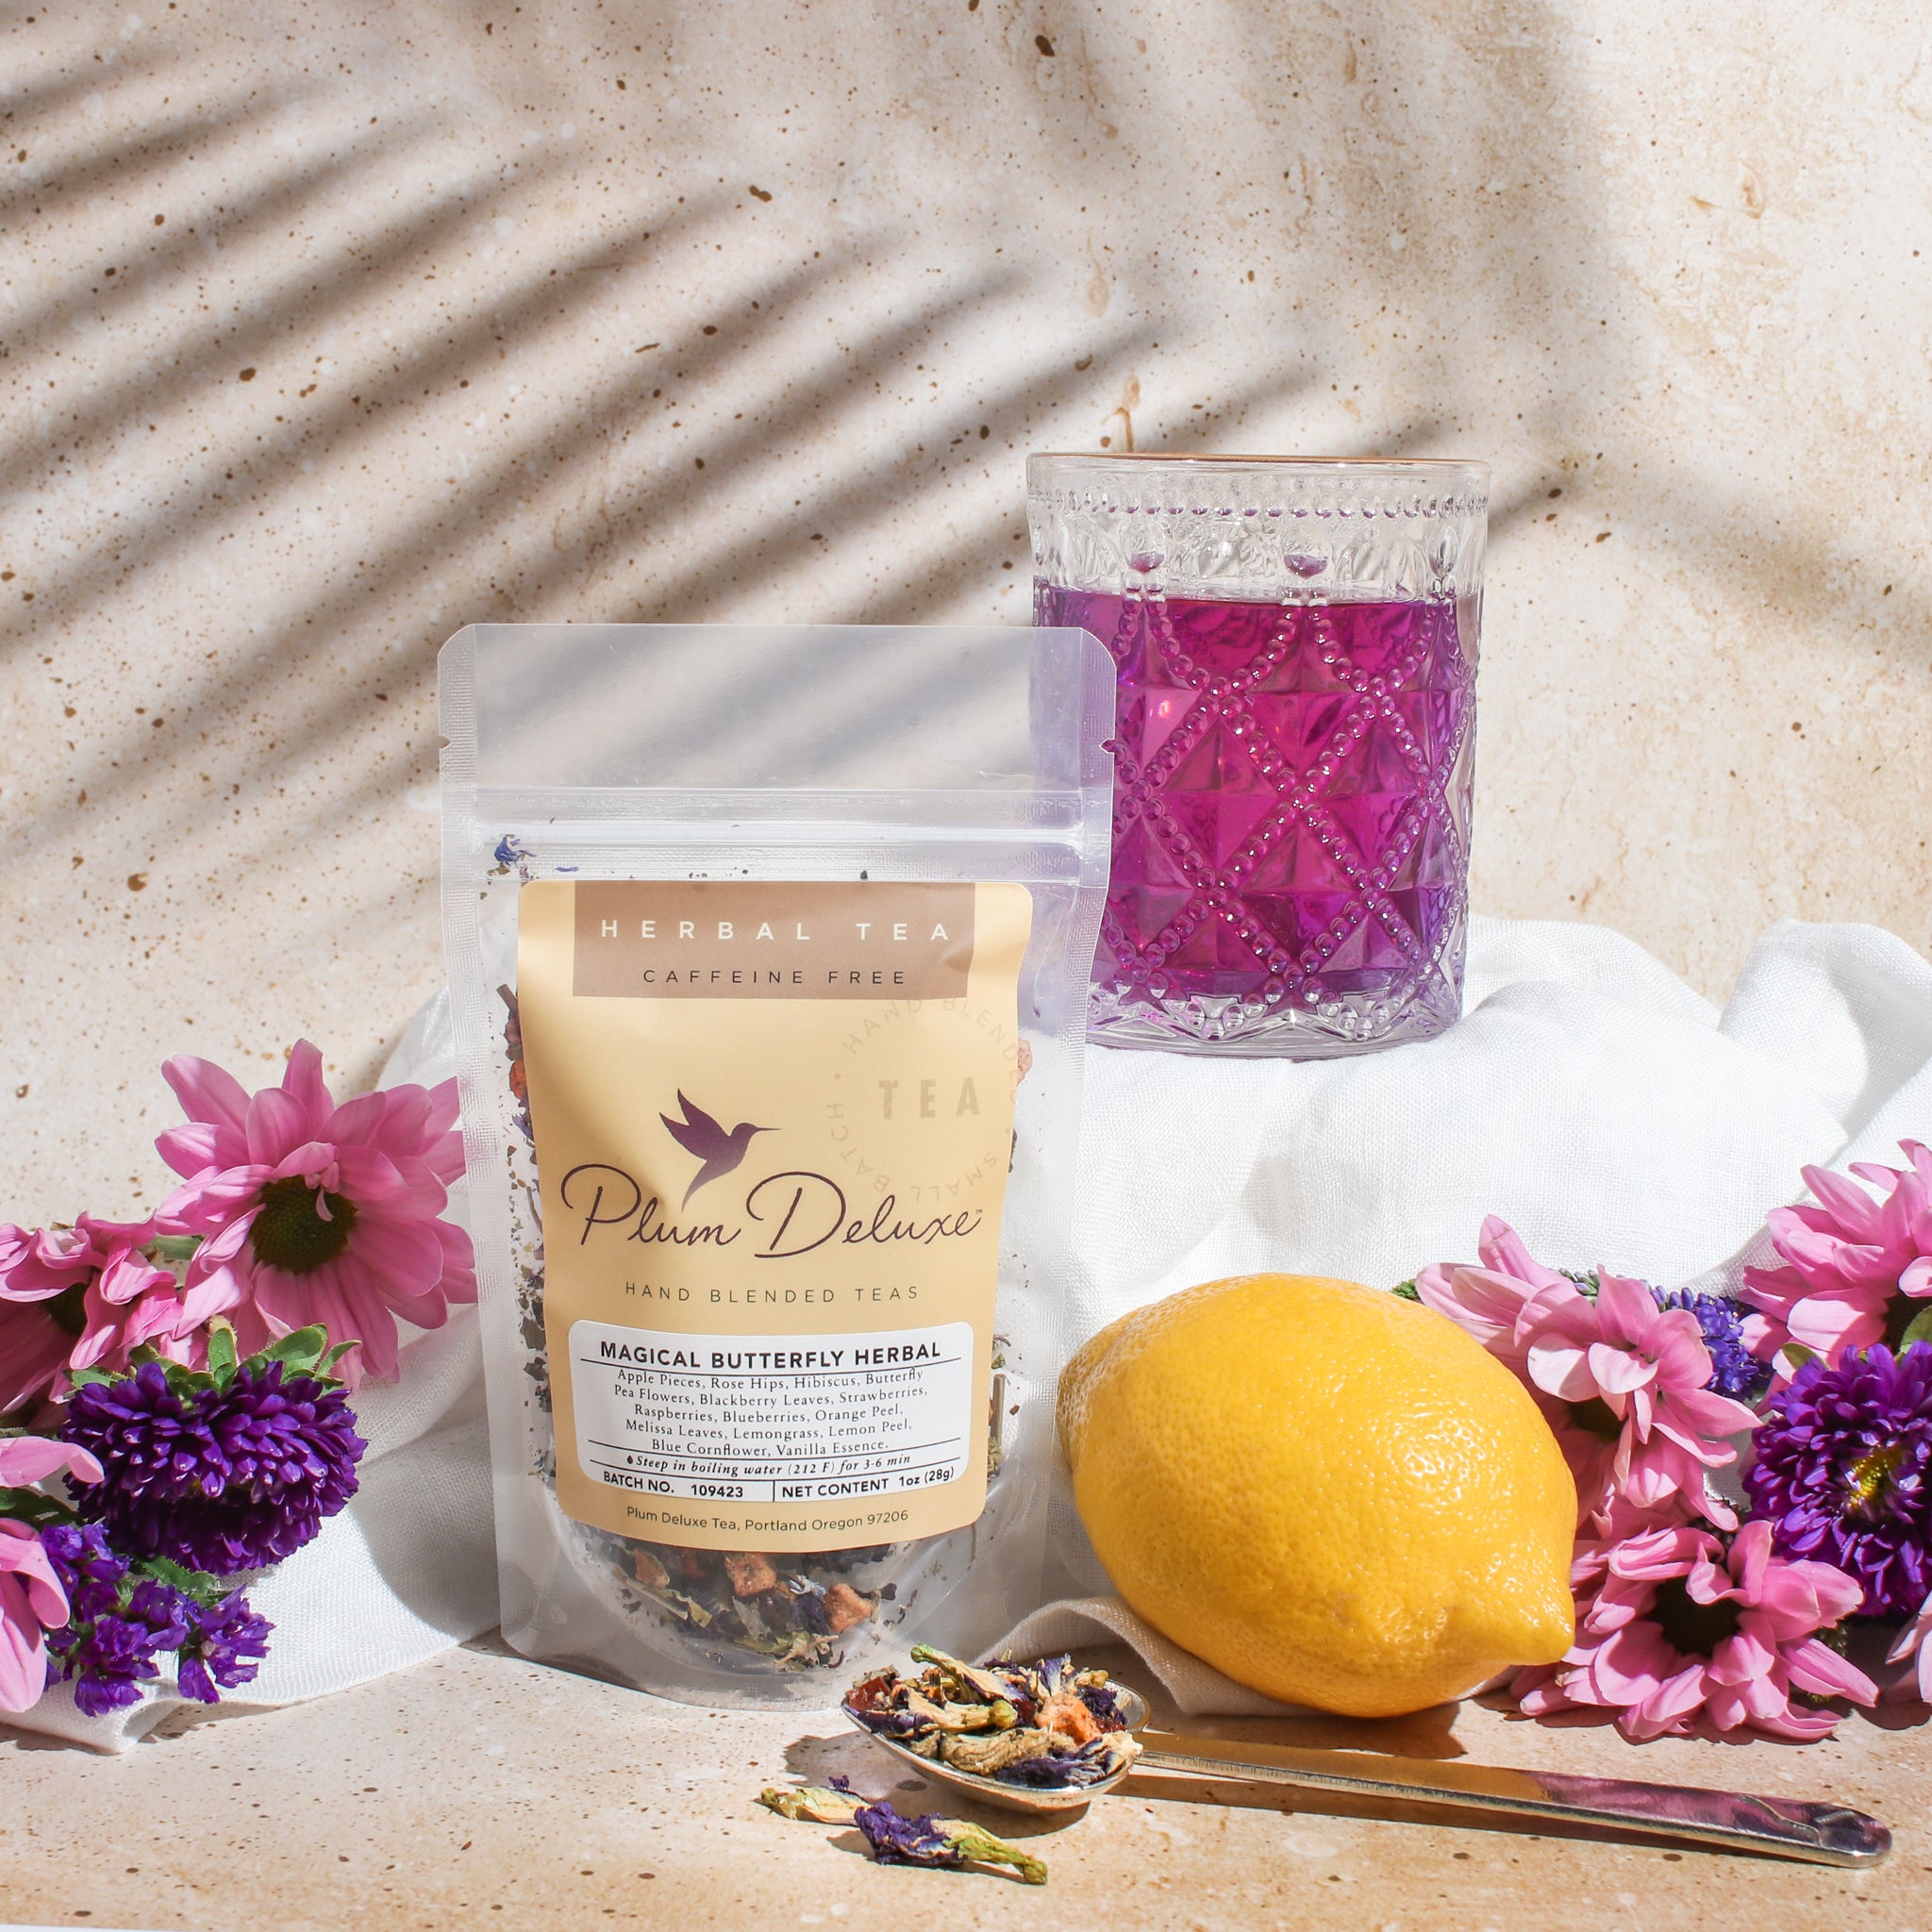 Butterfly Pea Flower Herbal Tea – ArtfulTea